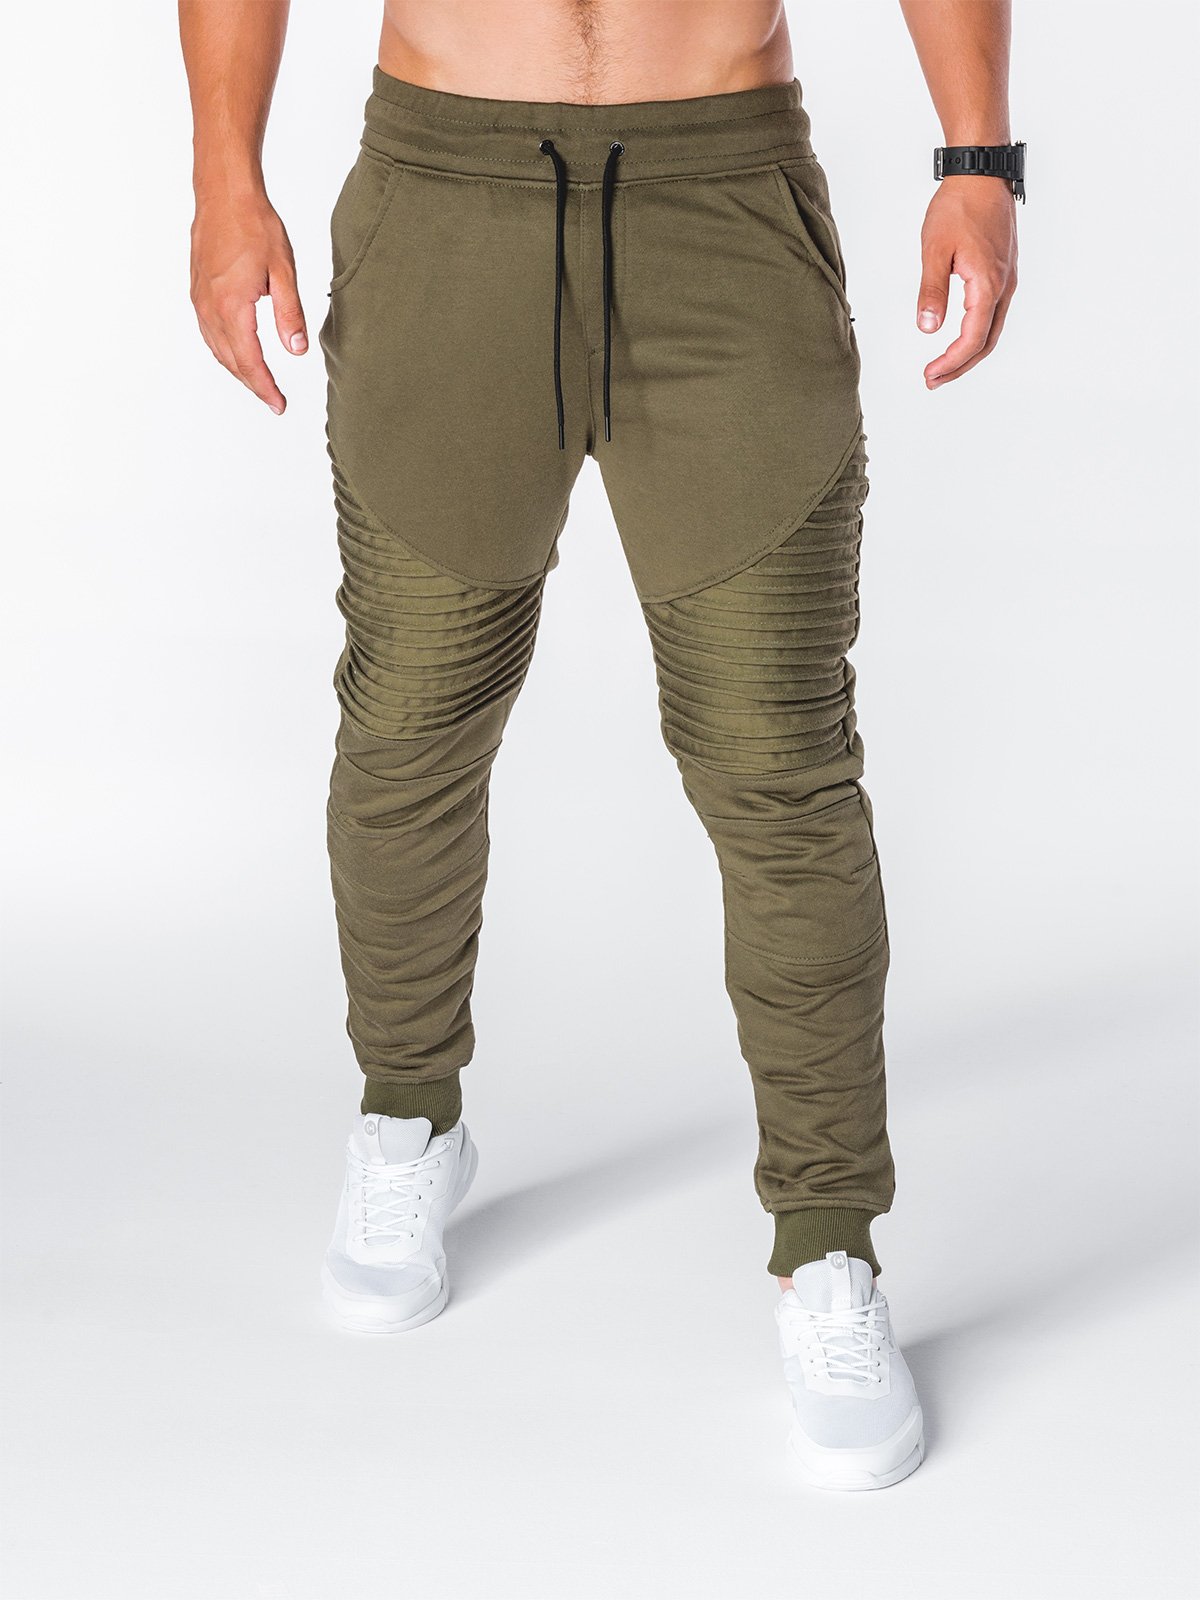 Men's sweatpants P644 - khaki | Ombre.com - Men's clothing online